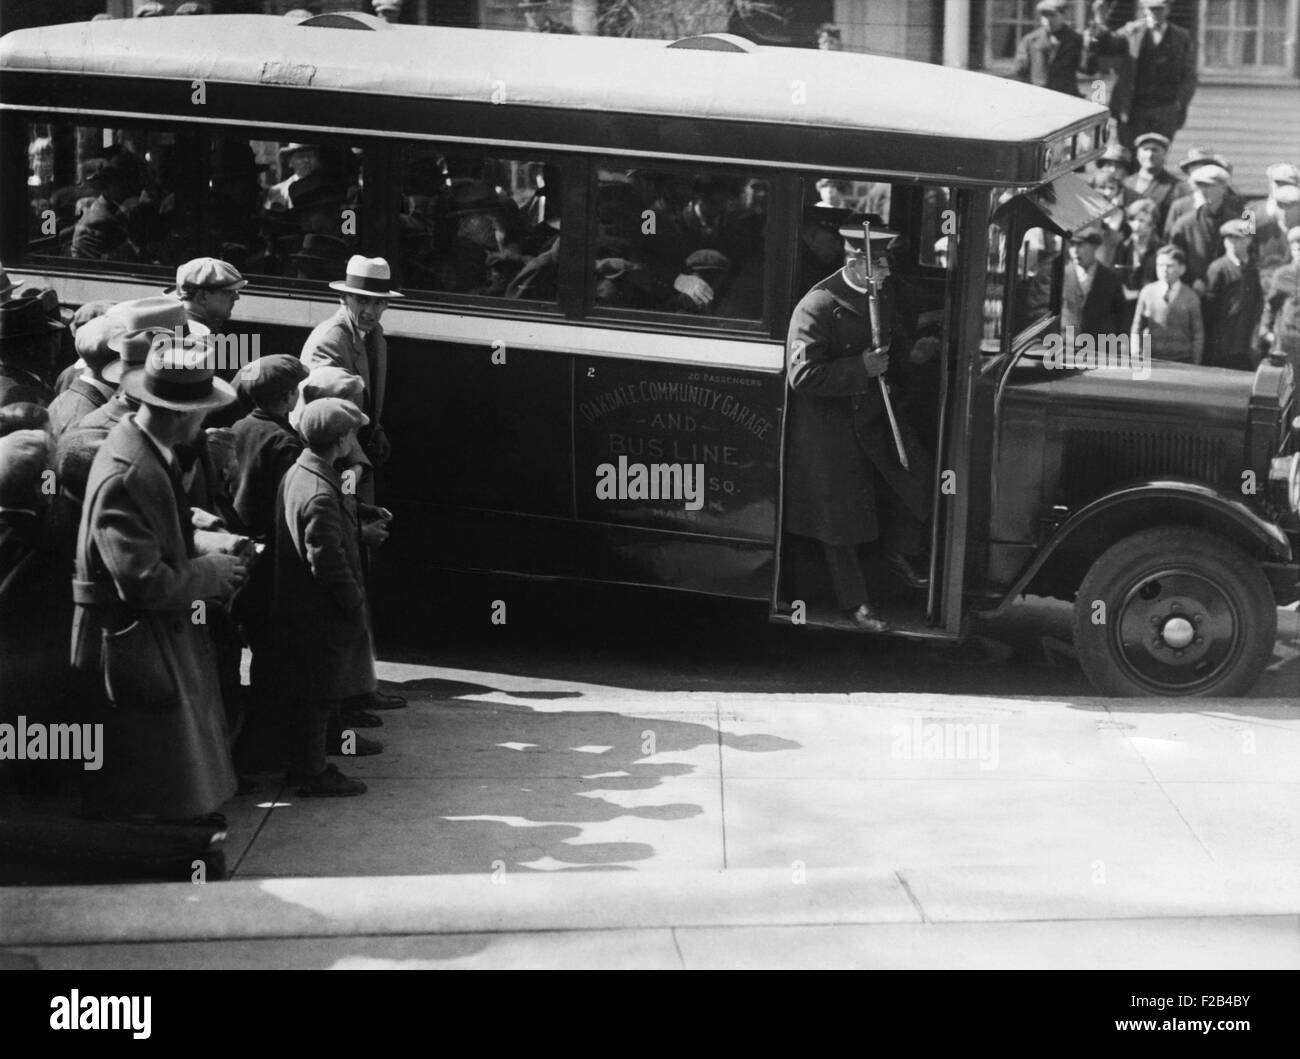 Sacco et Vanzetti prises à la cour sur un bus de l'Oakdale garage communautaire et ligne de bus. Un officier armé se tient dans la porte du bus. 9 avril 1927 - (CSU 2015 5 104) Banque D'Images